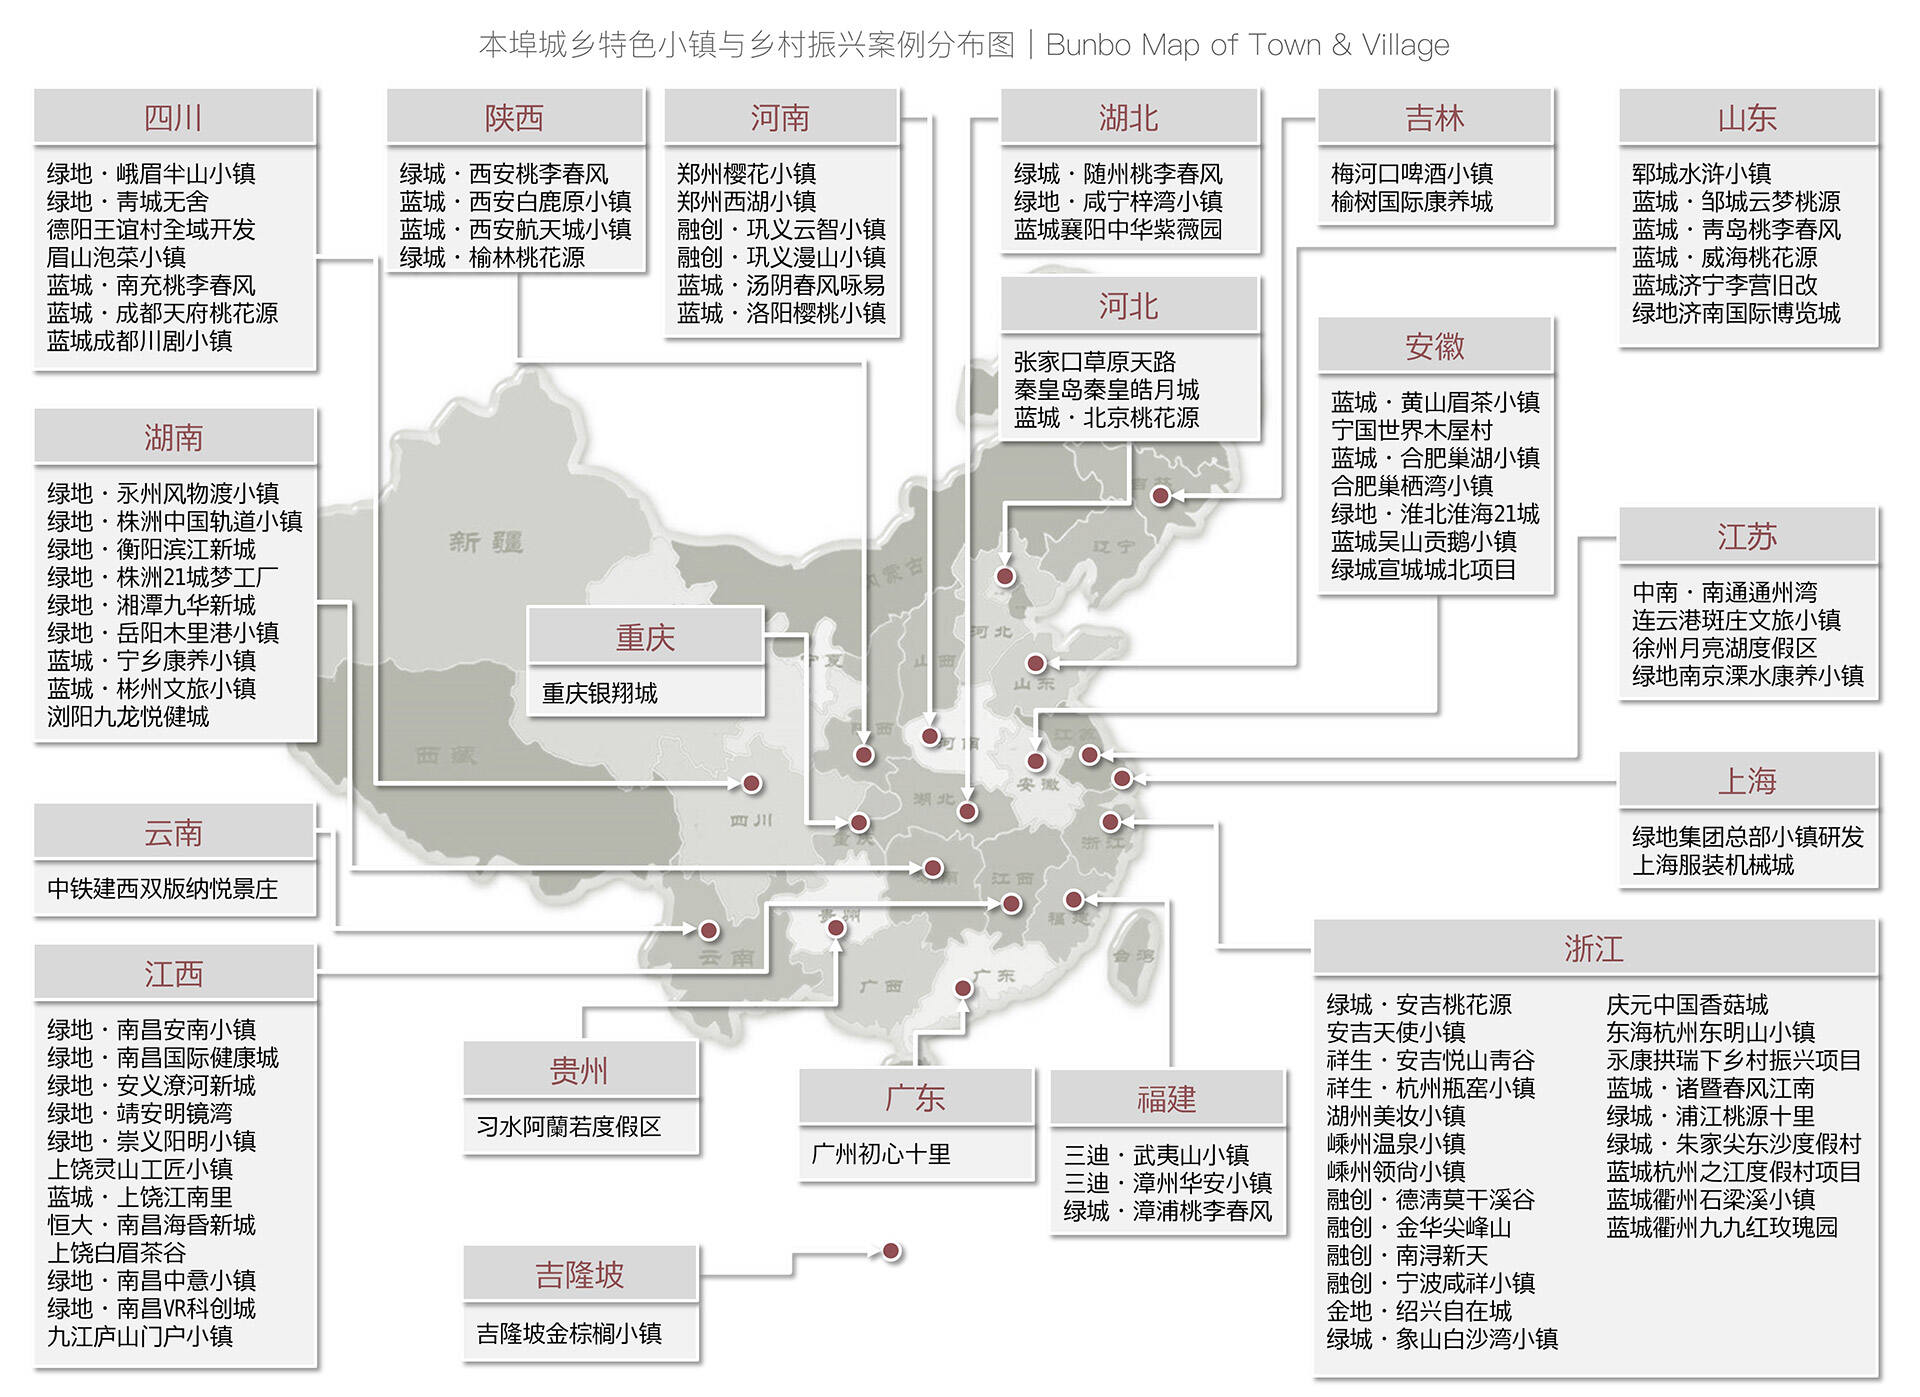 本埠城乡特色小镇与乡村振兴项目分布图